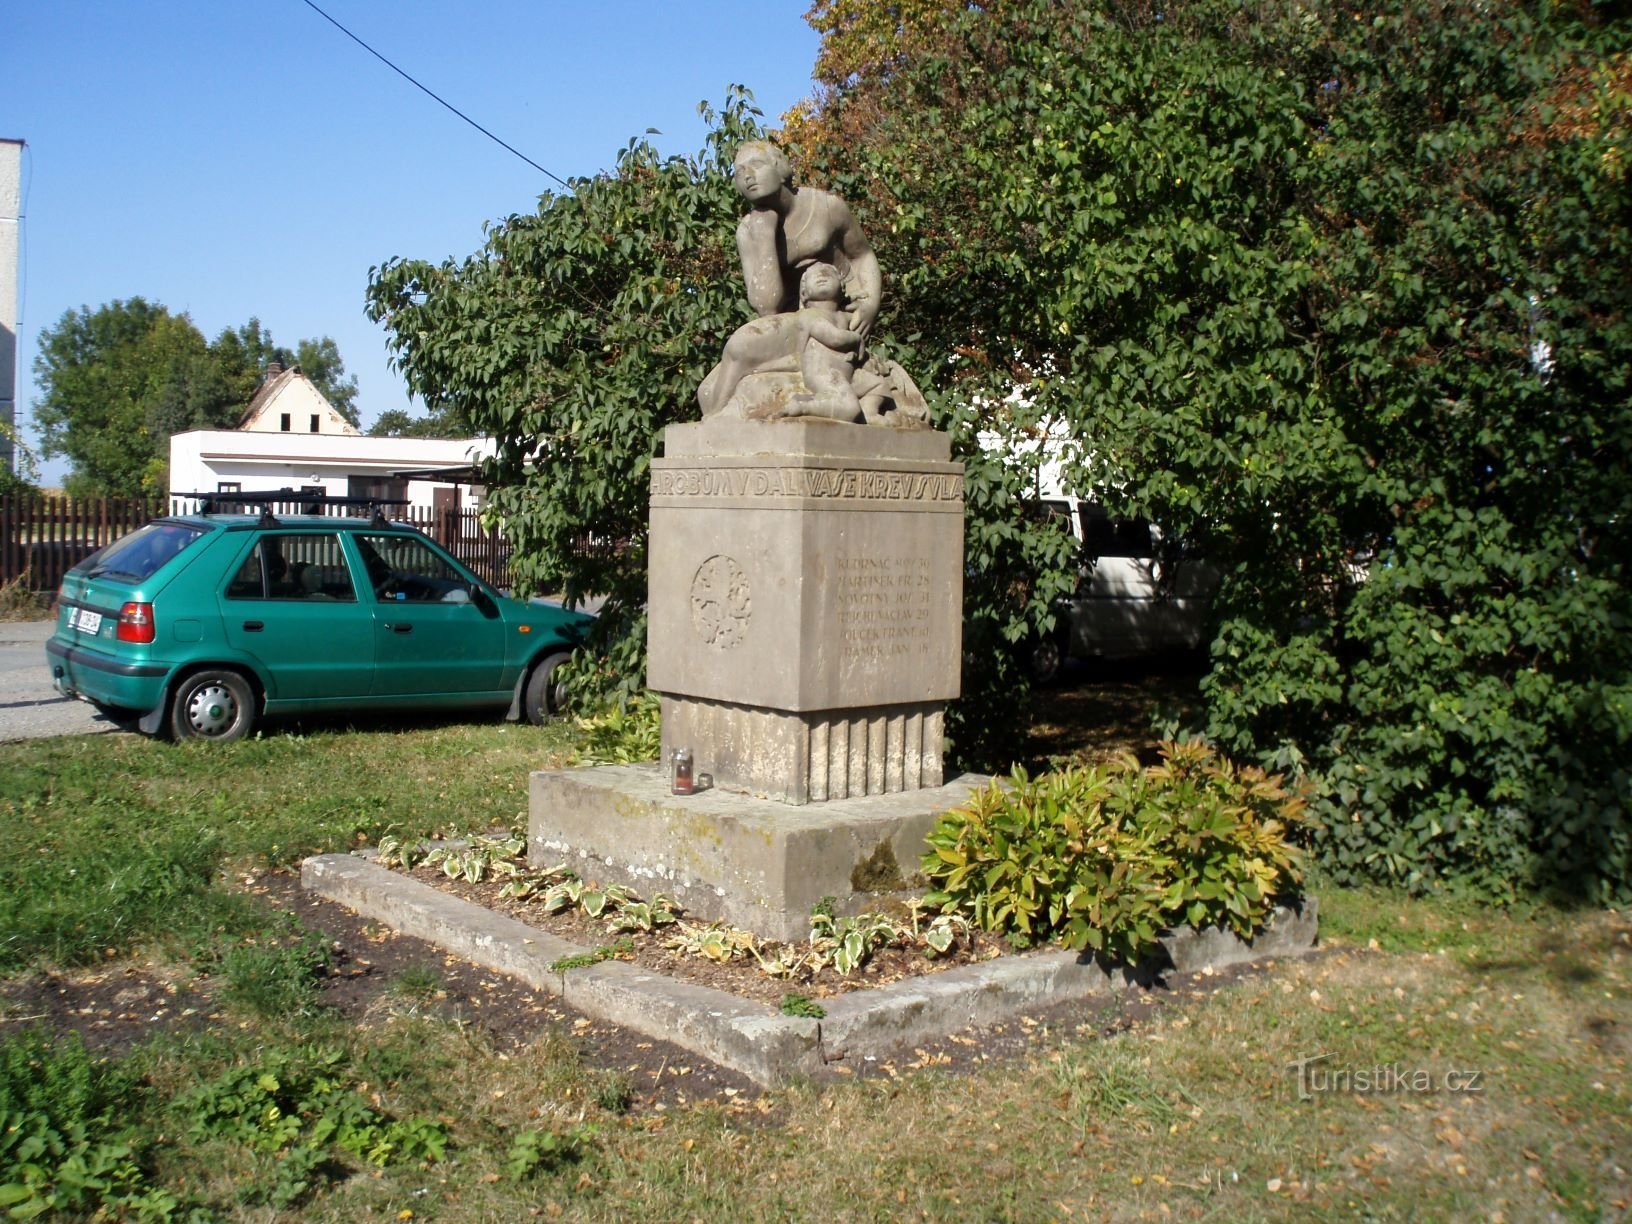 Spomenik poginulima u Prvom svjetskom ratu u Pileticama (Hradec Králové, 1. lipnja 26.9.2009.)